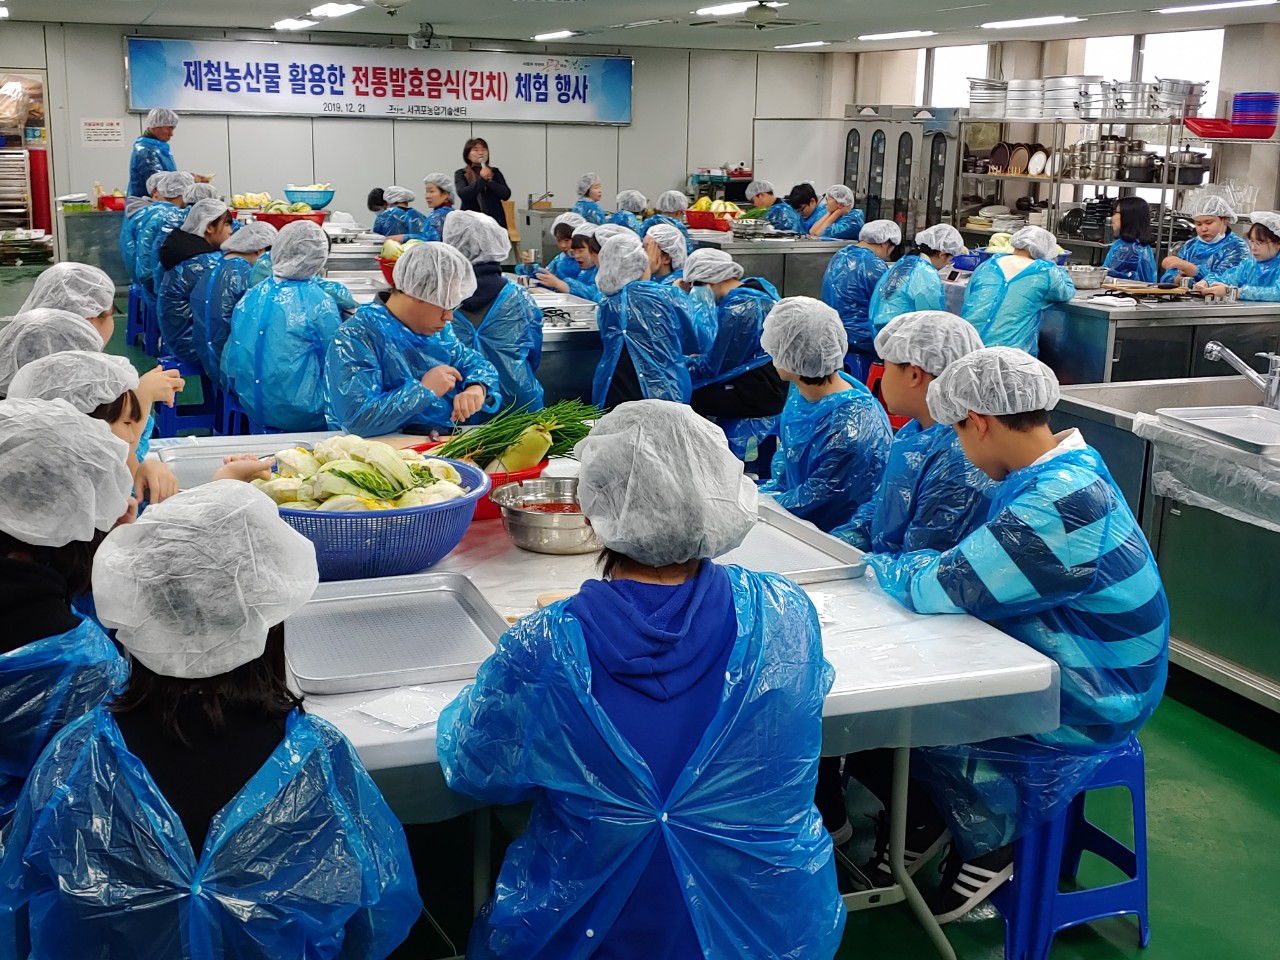 제철농산물 활용한 전통발효음식(김치)체험 행사